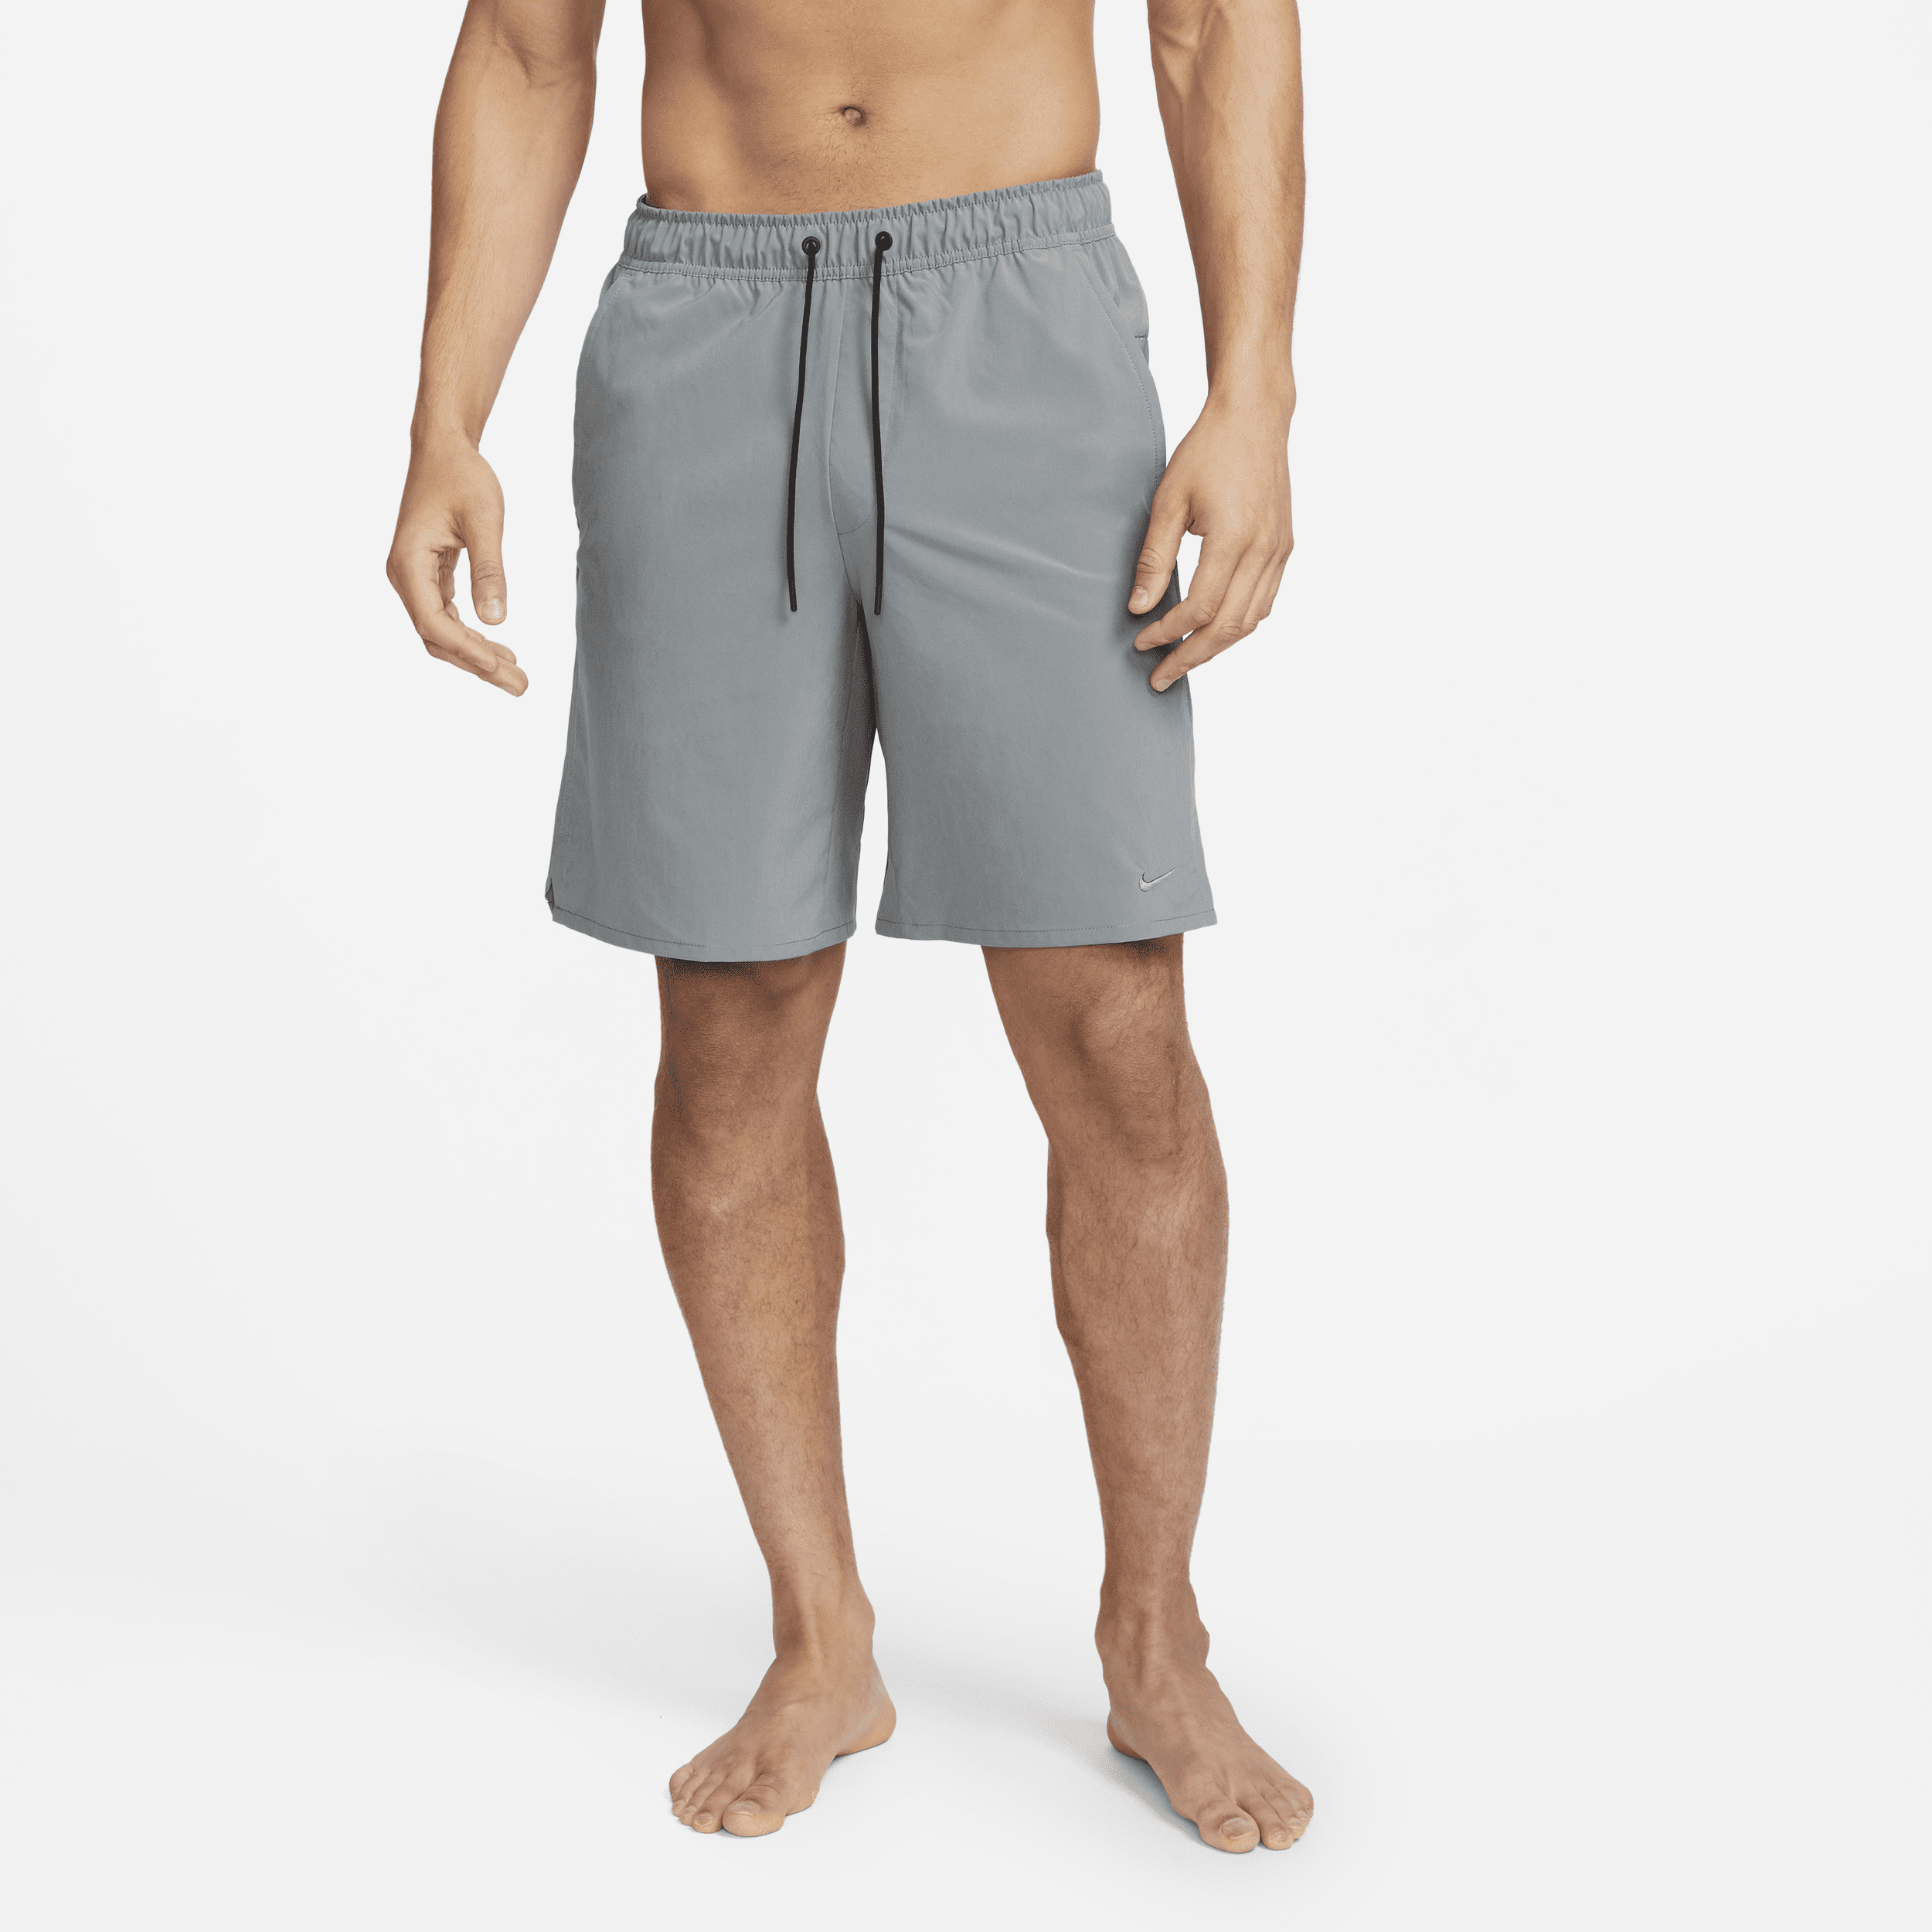 Nike Unlimited Dri-FIT Alsidige shorts (23 cm) til mænd - grå